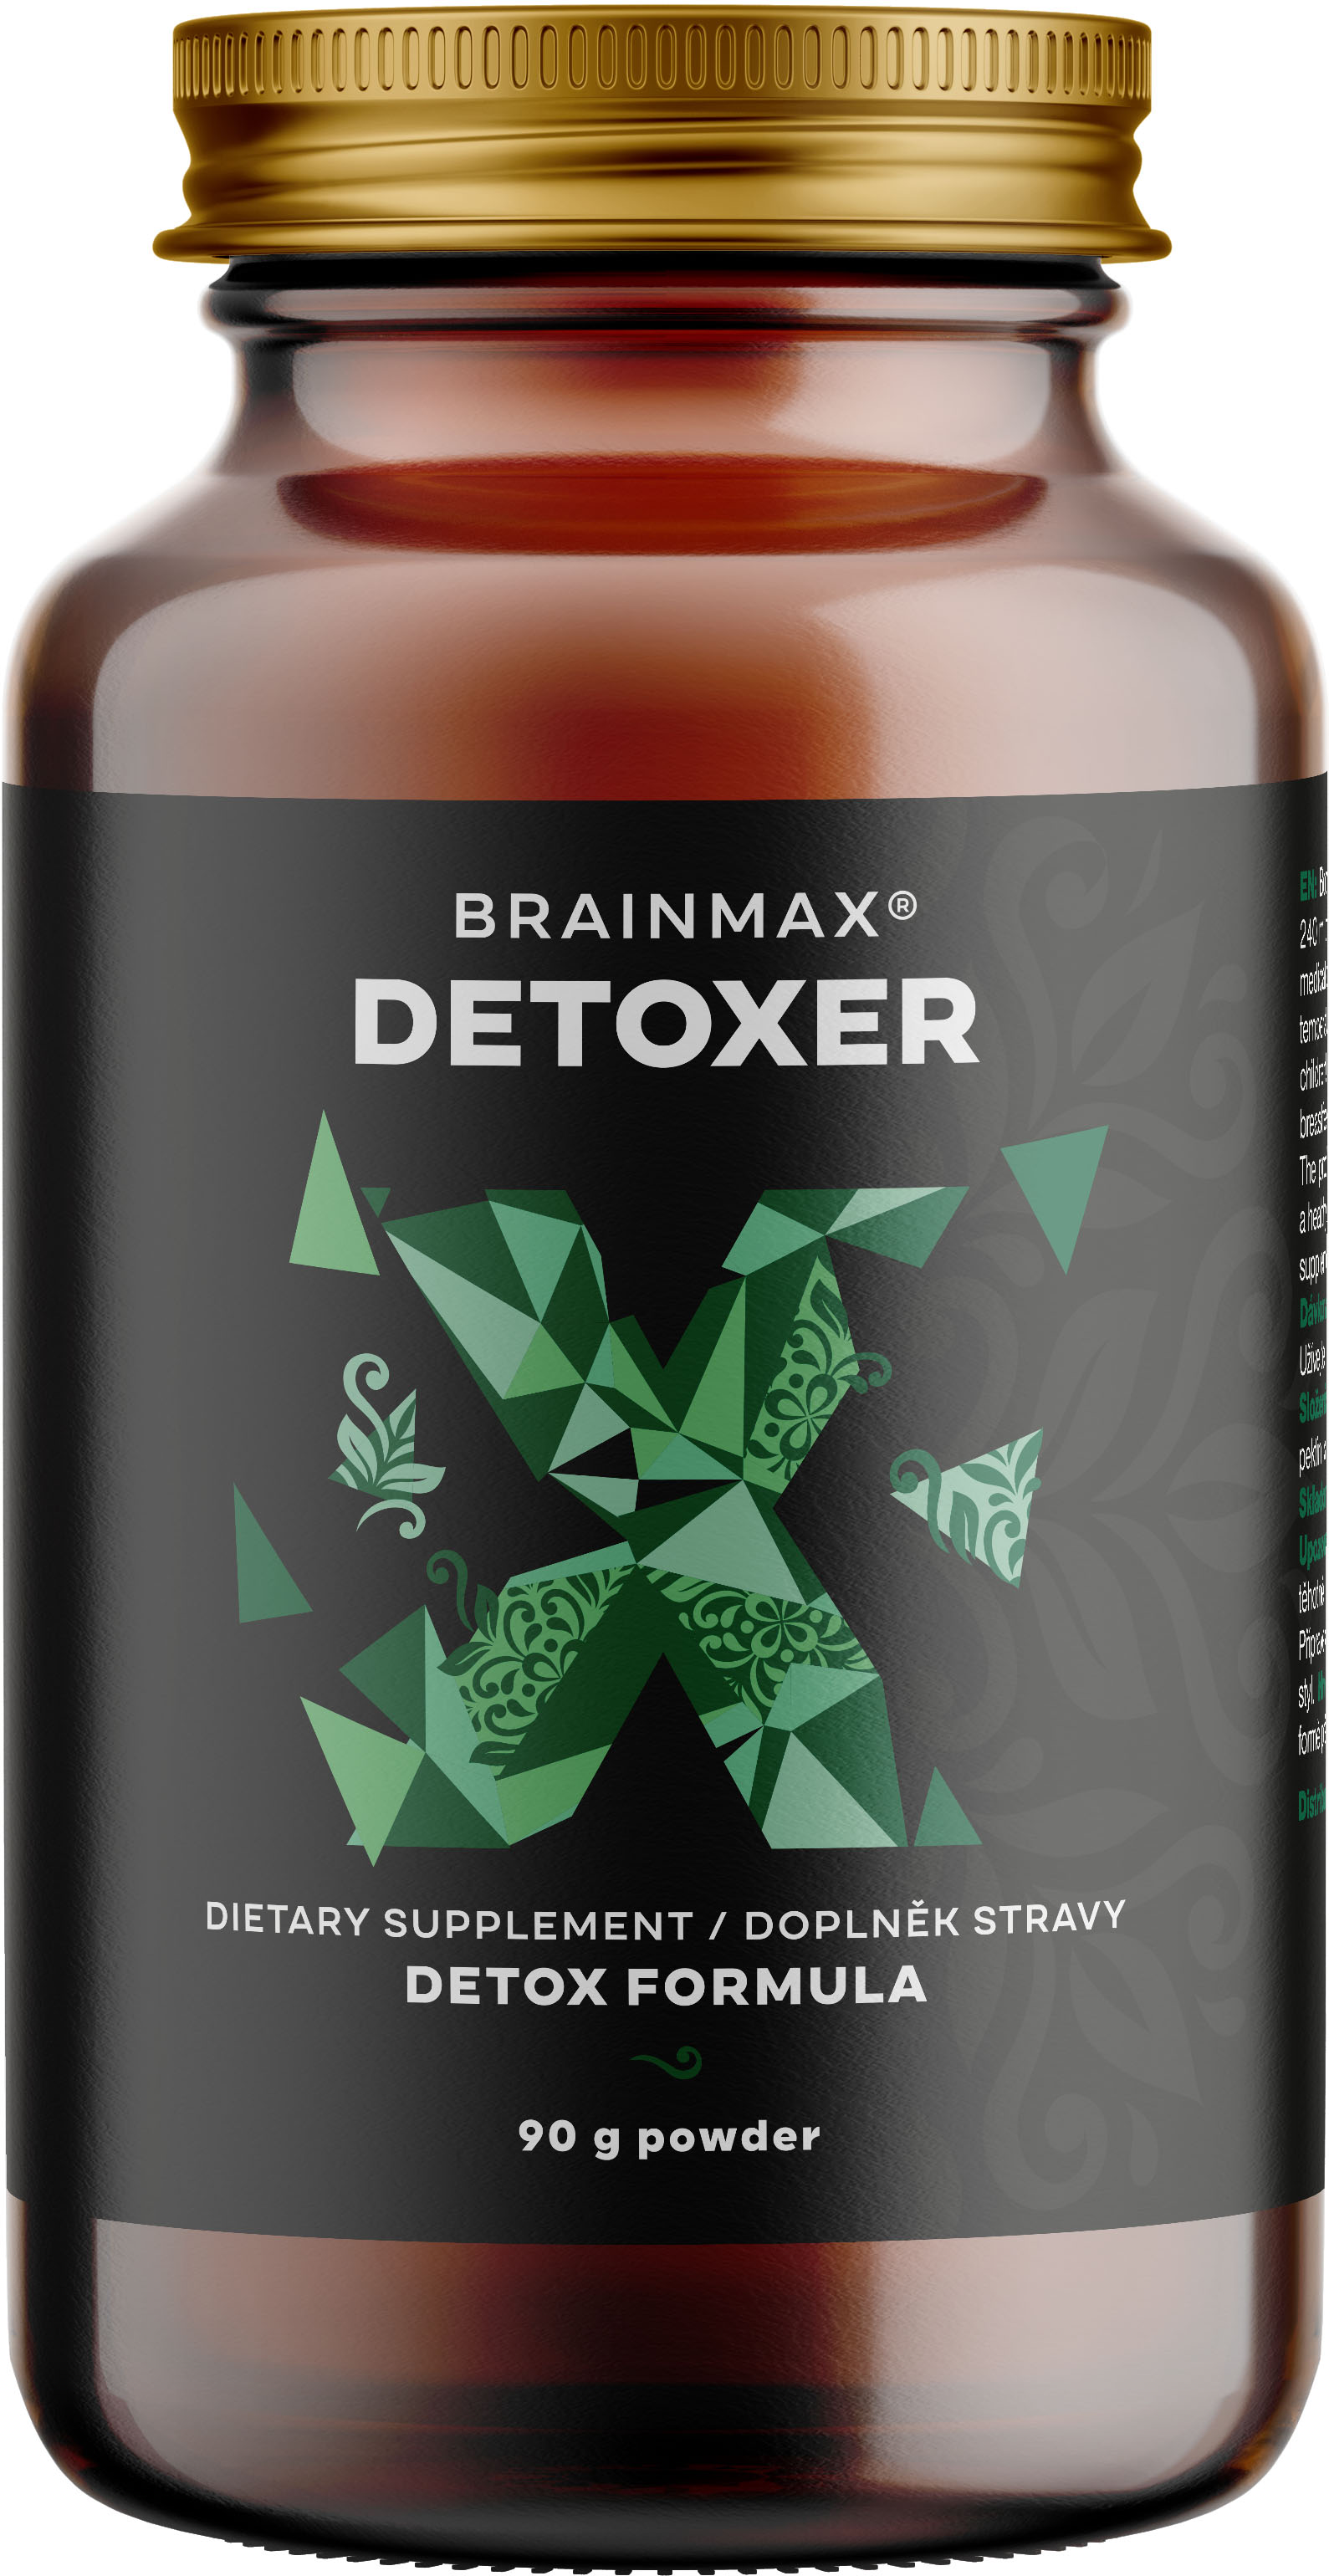 BrainMax Detoxer, prášek pro detoxikaci organismu, 90 g Optimalizované složení s aktivním uhlím, bentonitovým jílem, chitosanem a citrusovým pektinem k detoxikaci, doplněk stravy